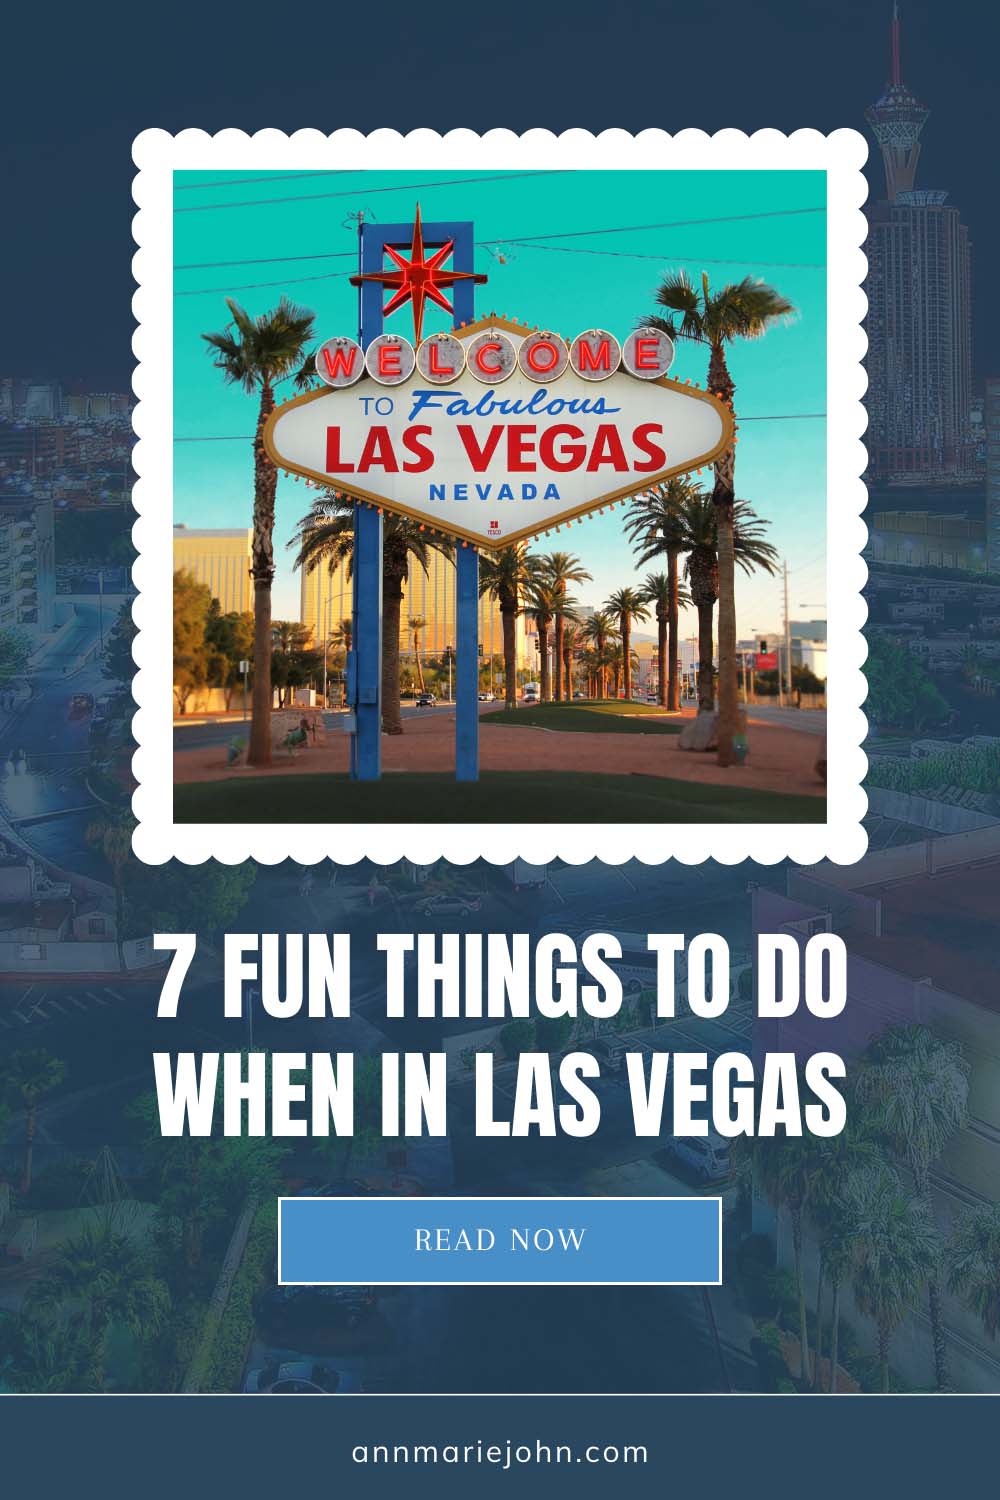 7 Fun Things You Should Do When In Las Vegas